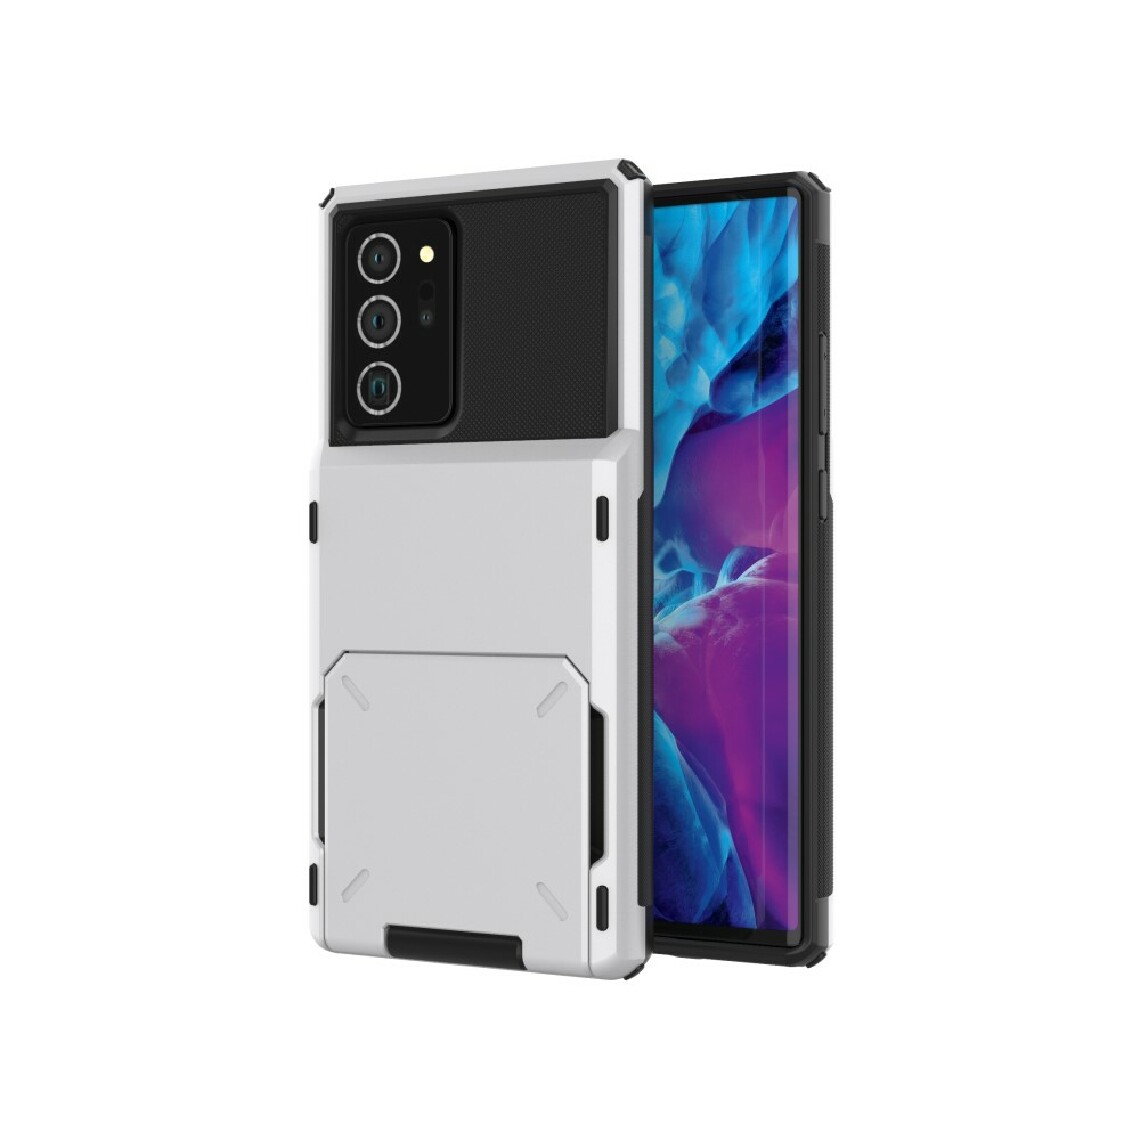 Other - Coque en TPU flip hybride avec porte-carte blanc pour votre Samsung Galaxy Note 20/Note 20 5G - Coque, étui smartphone